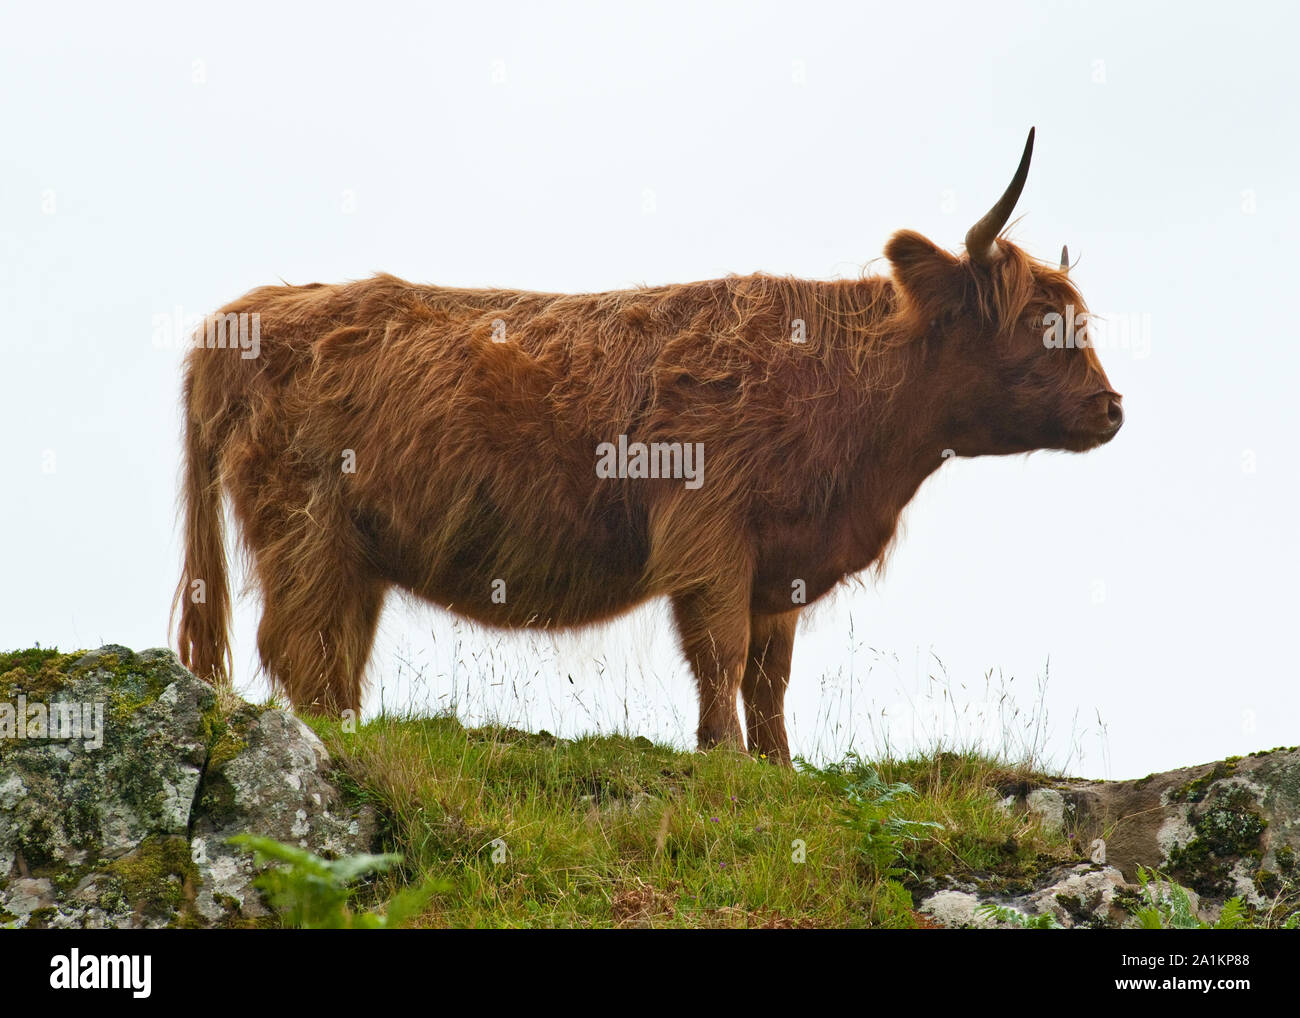 Highland Cow. Isle of Mull, Scotland Stock Photo